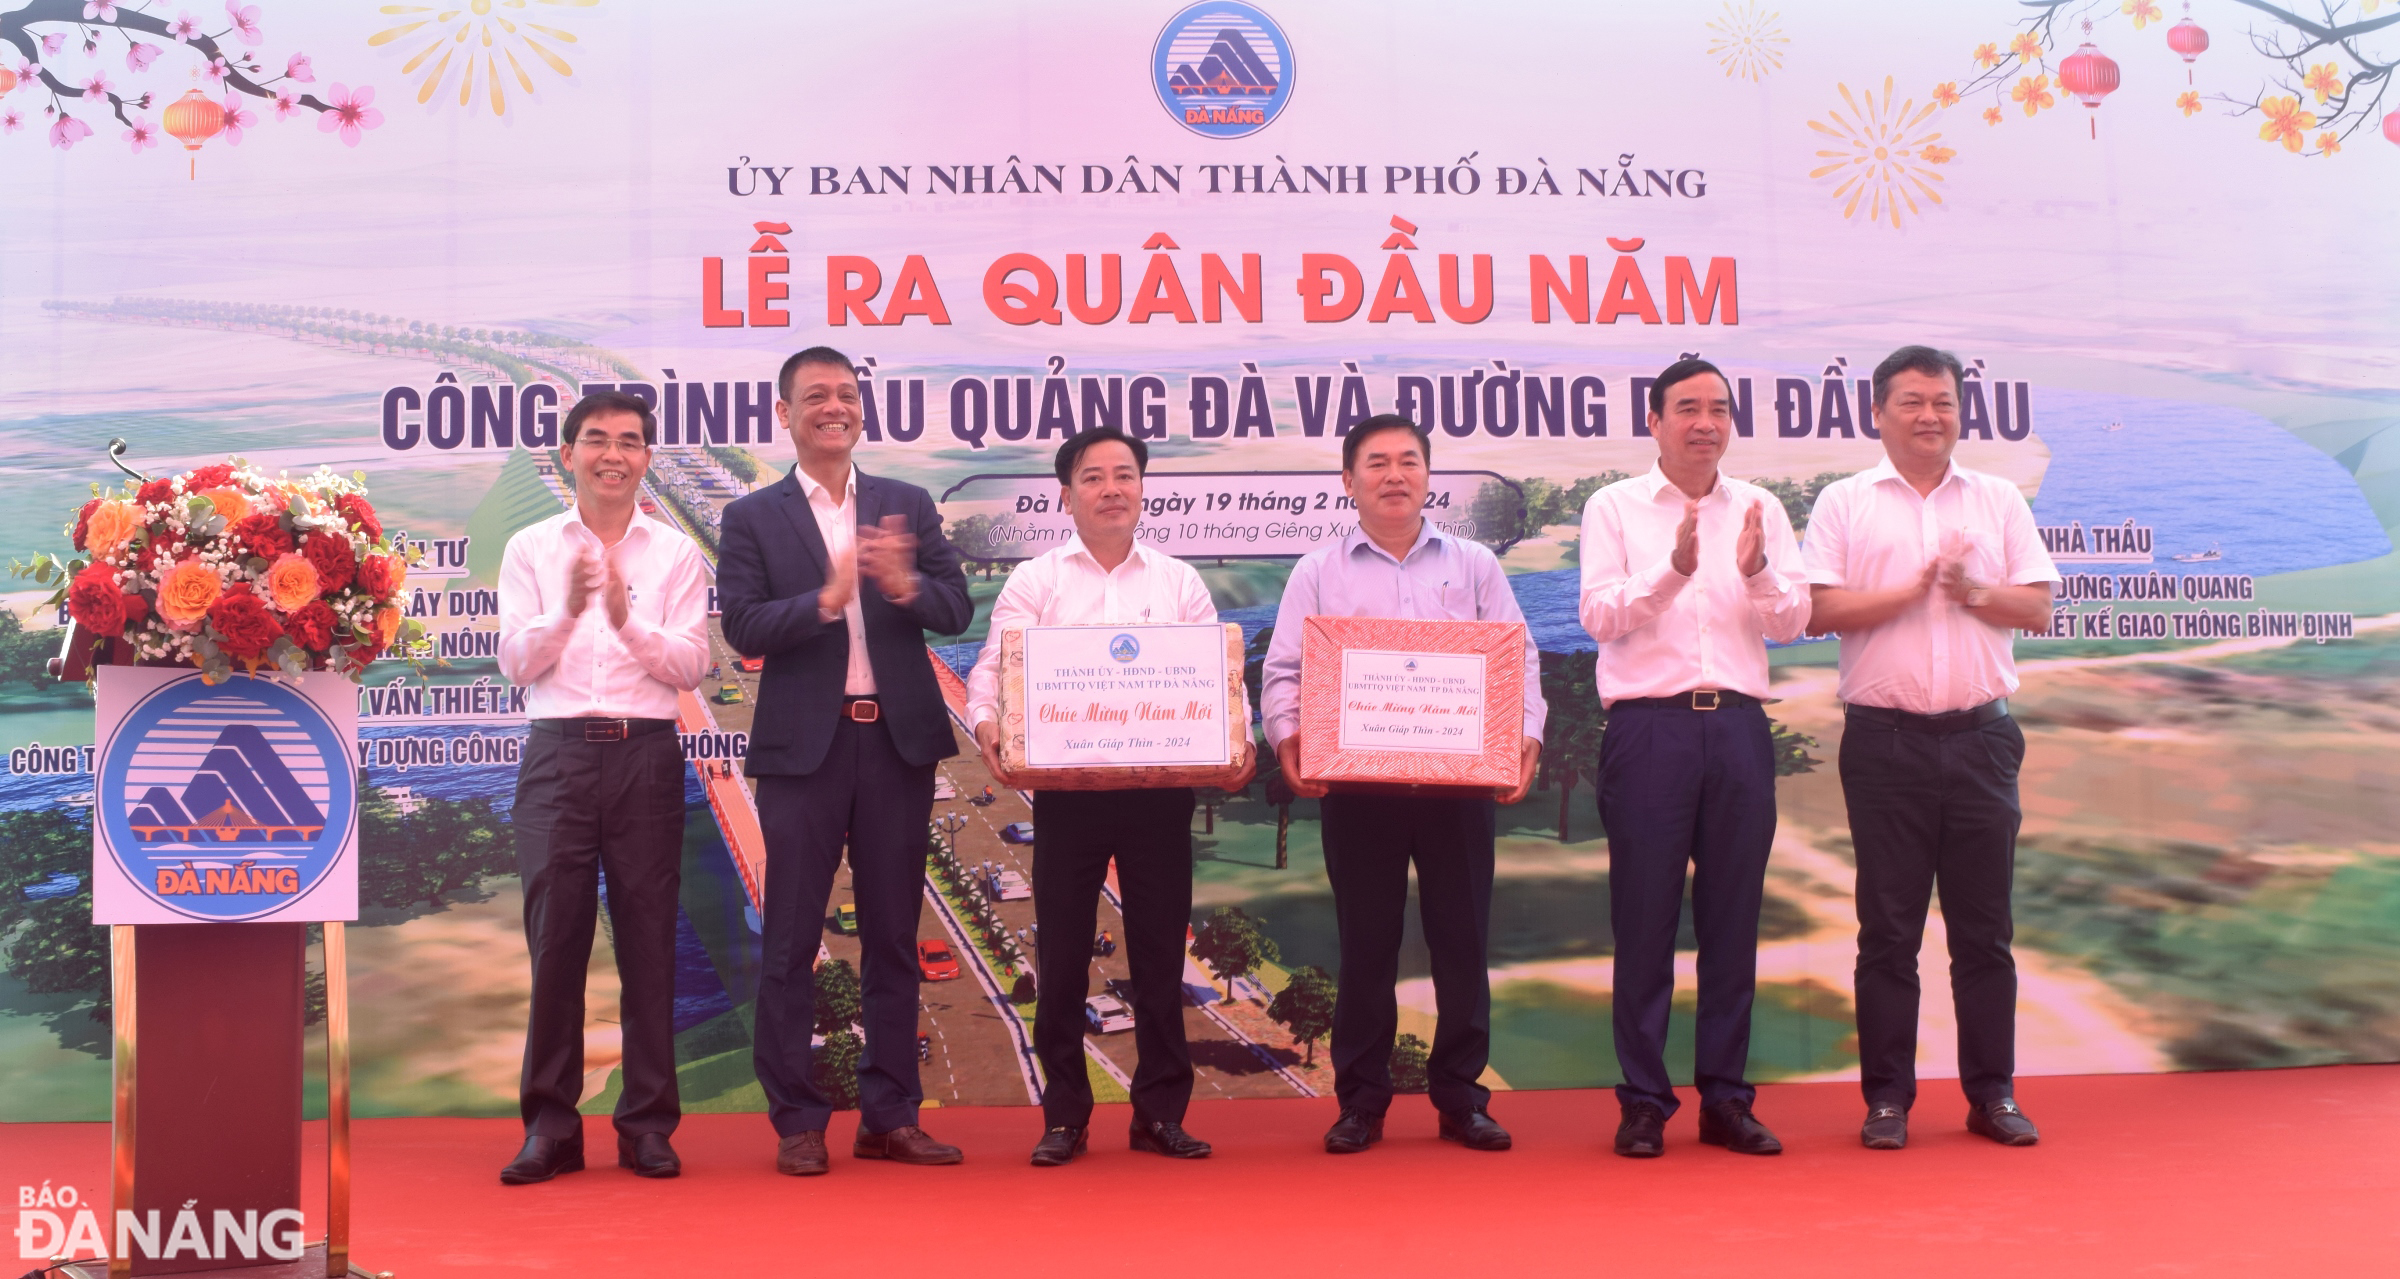 Chủ tịch UBND thành phố Lê Trung Chinh (thứ 2, từ phải sang) tặng quà động viên các nhà thầu thi công công trình cầu Quảng Đà và đường dẫn đầu cầu. Ảnh: HOÀNG HIỆP